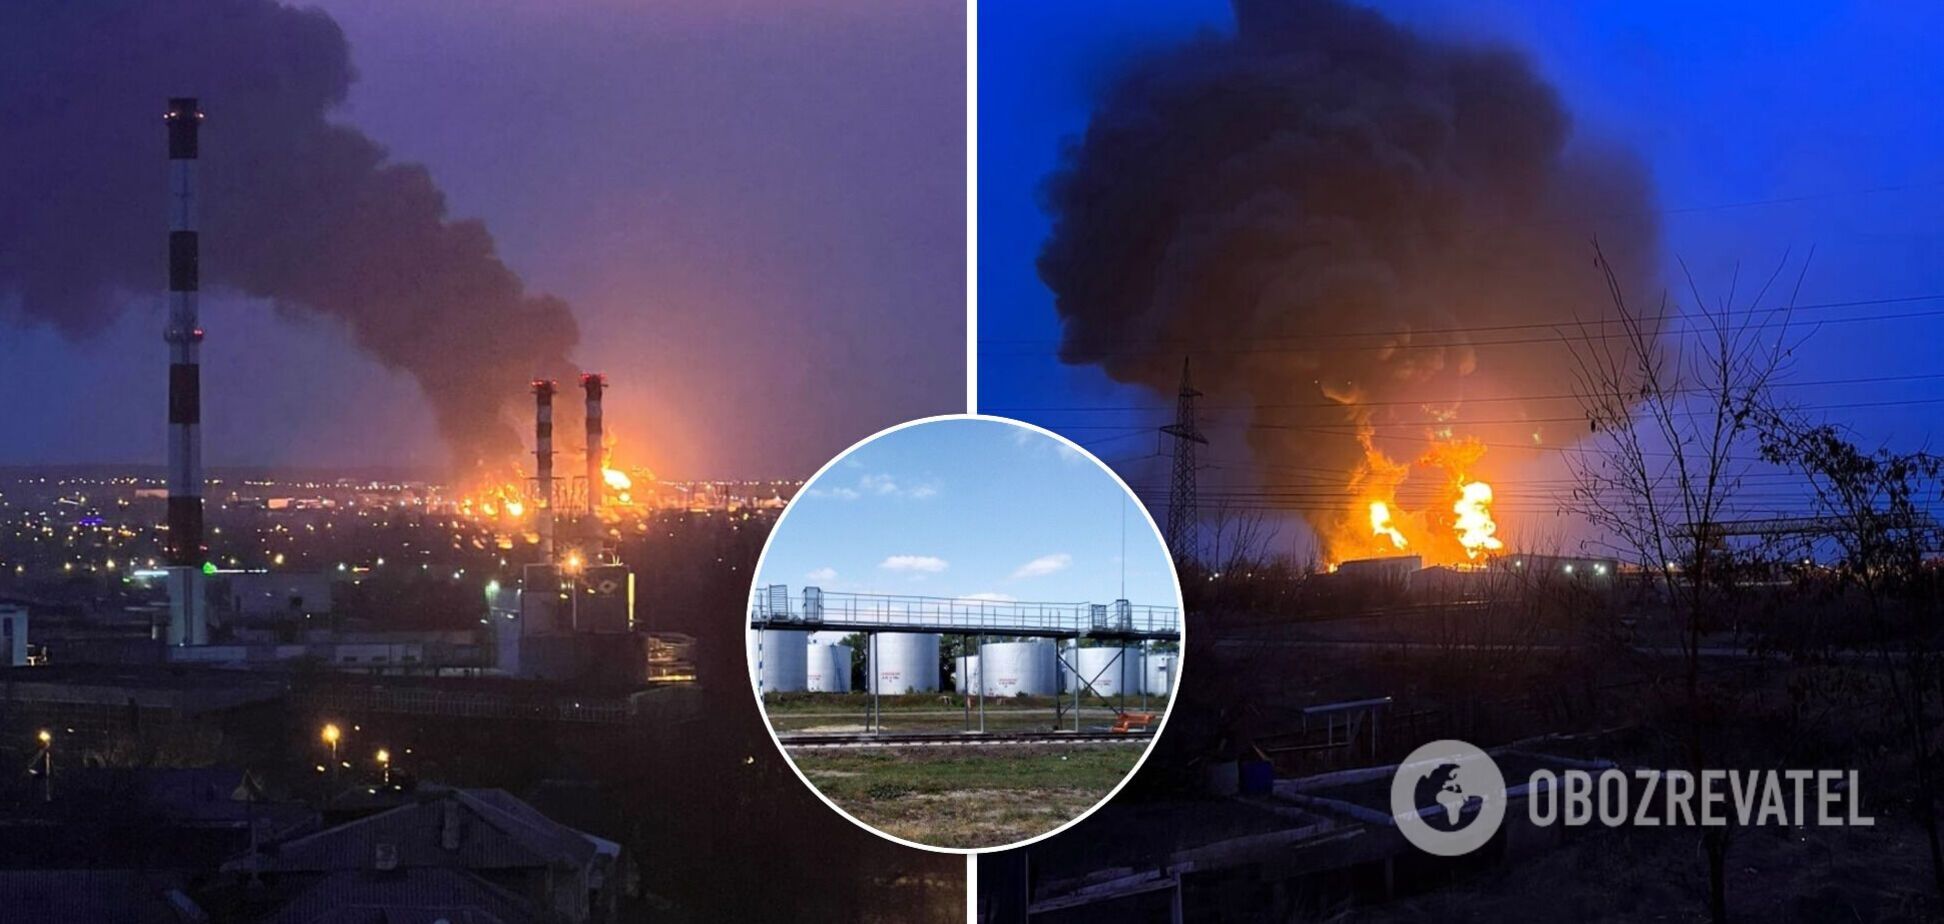 В Белгороде вспыхнул мощный пожар на нефтебазе, поднялся столб огня и дыма. Фото и видео